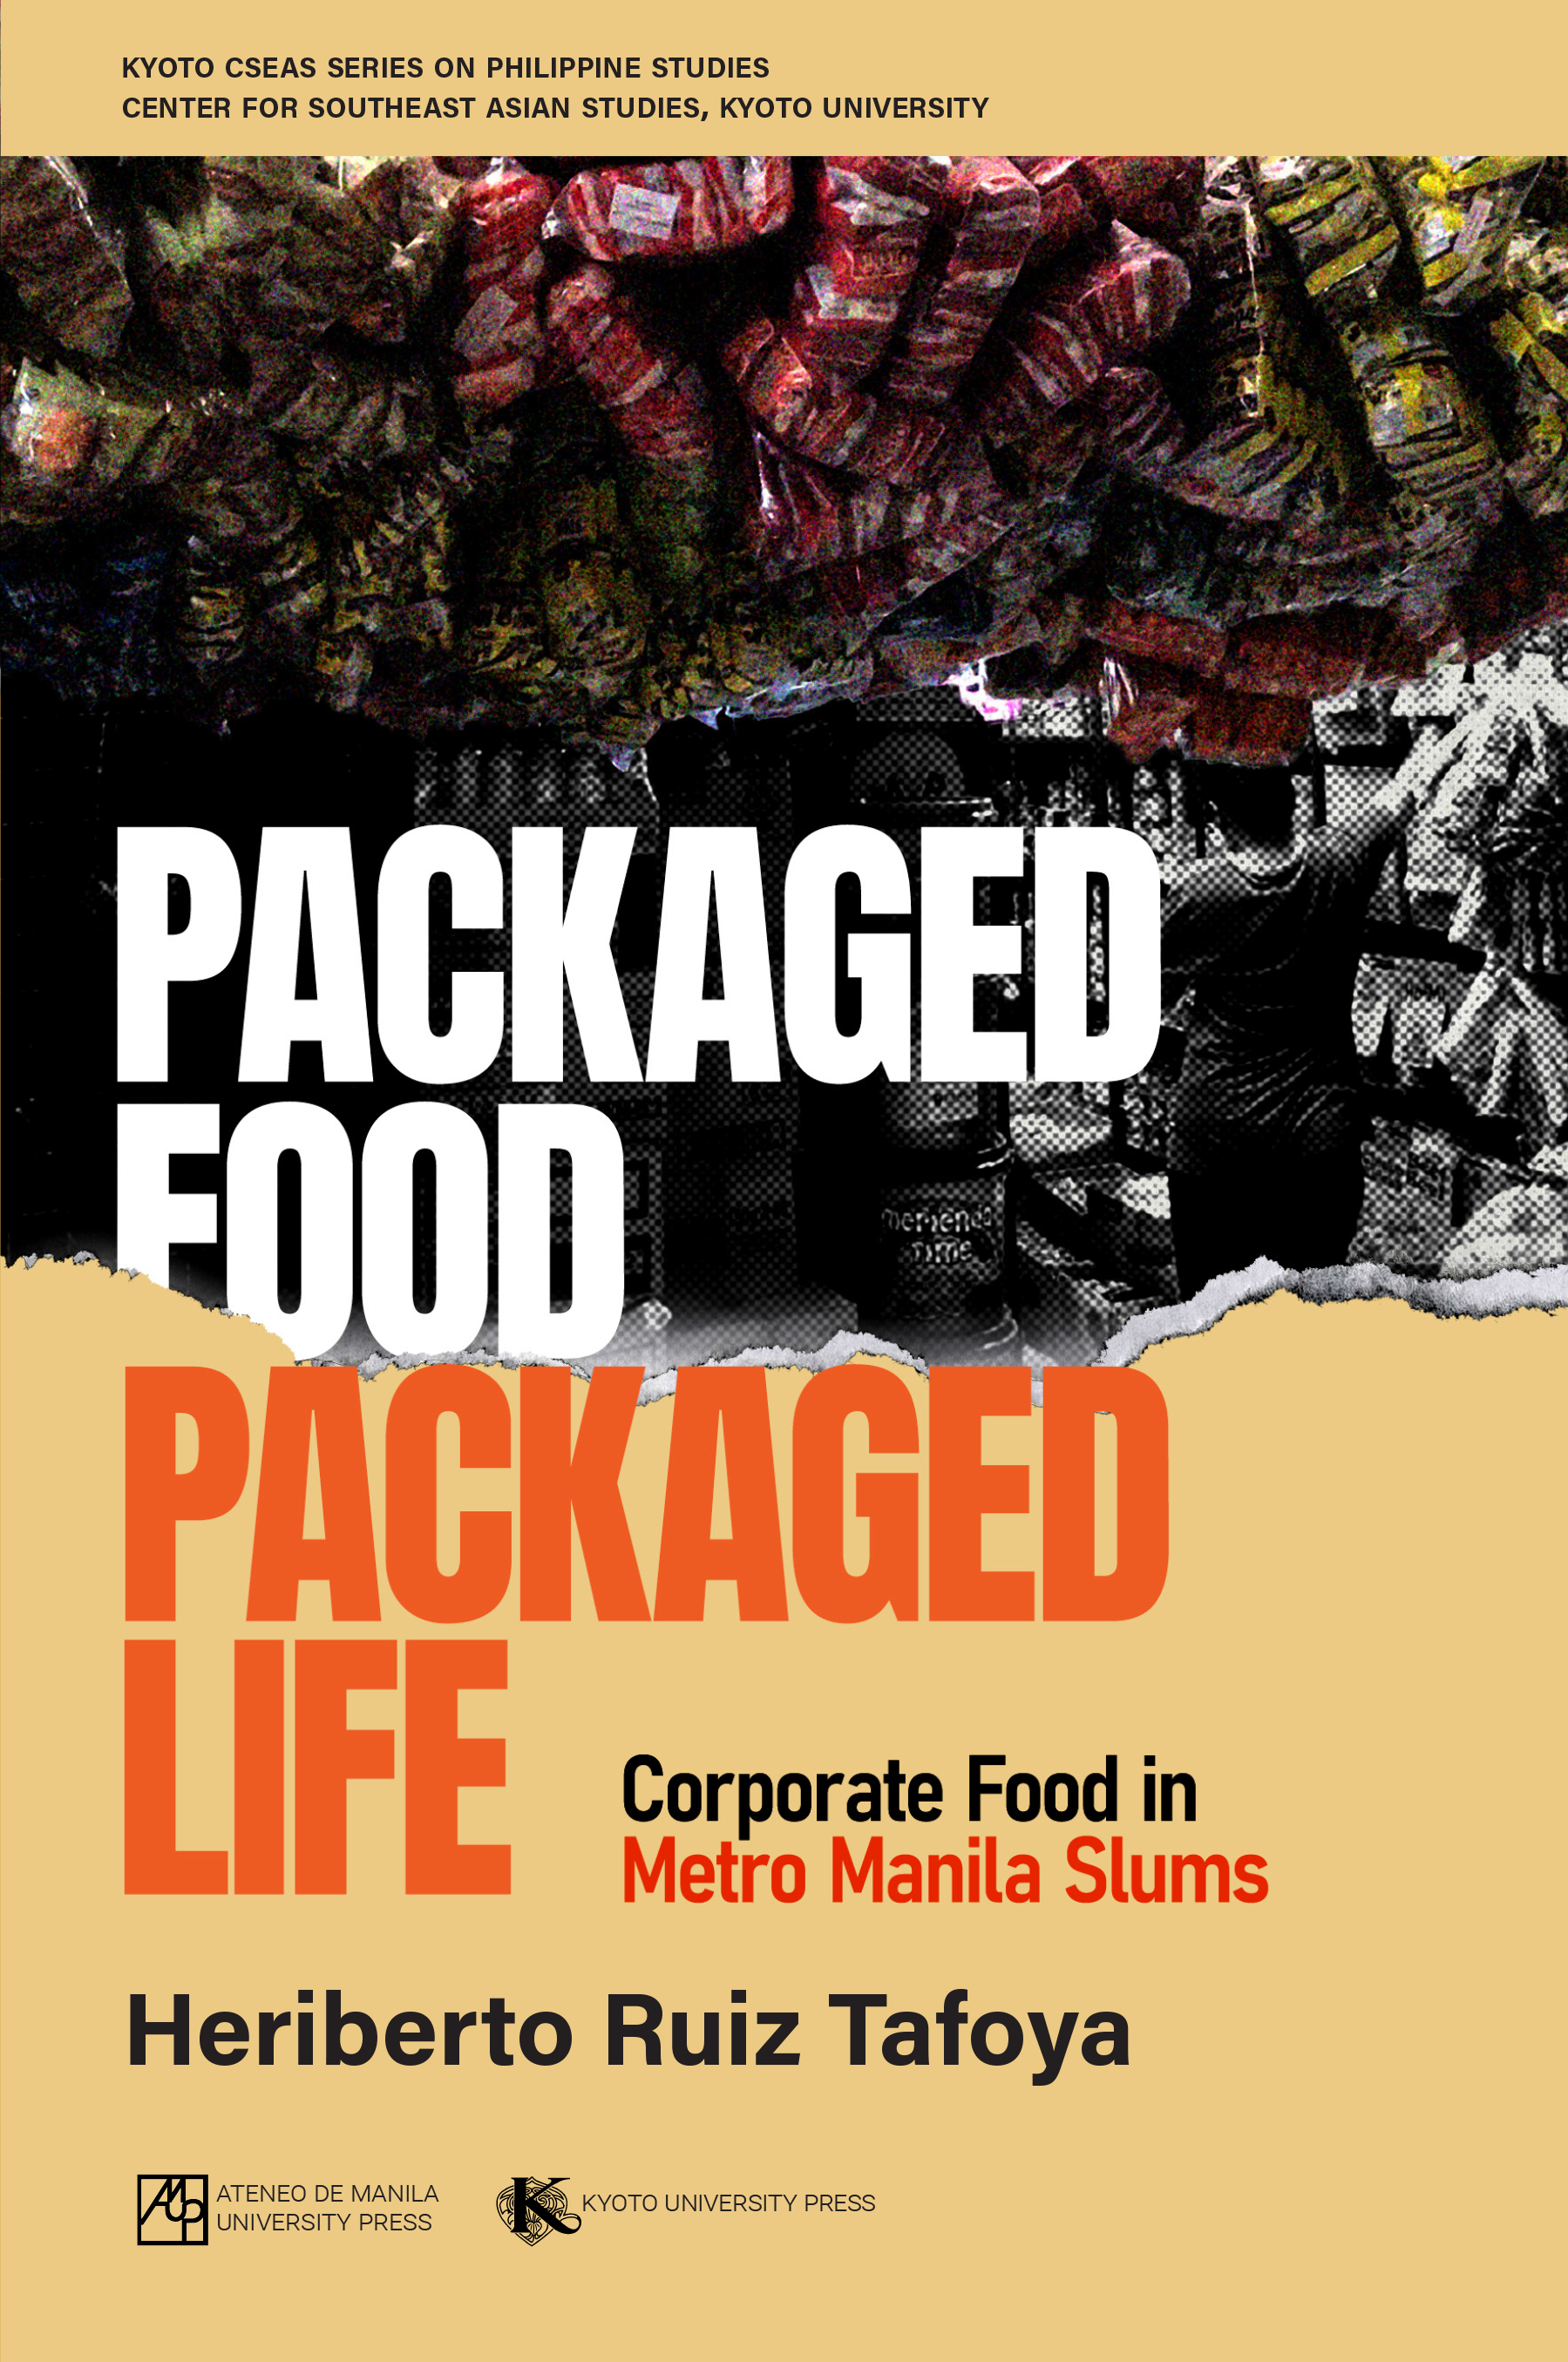 Packaged Food, Packaged Life: Corporate Food in Metro Manila Slums by Heriberto Ruiz Tafoya